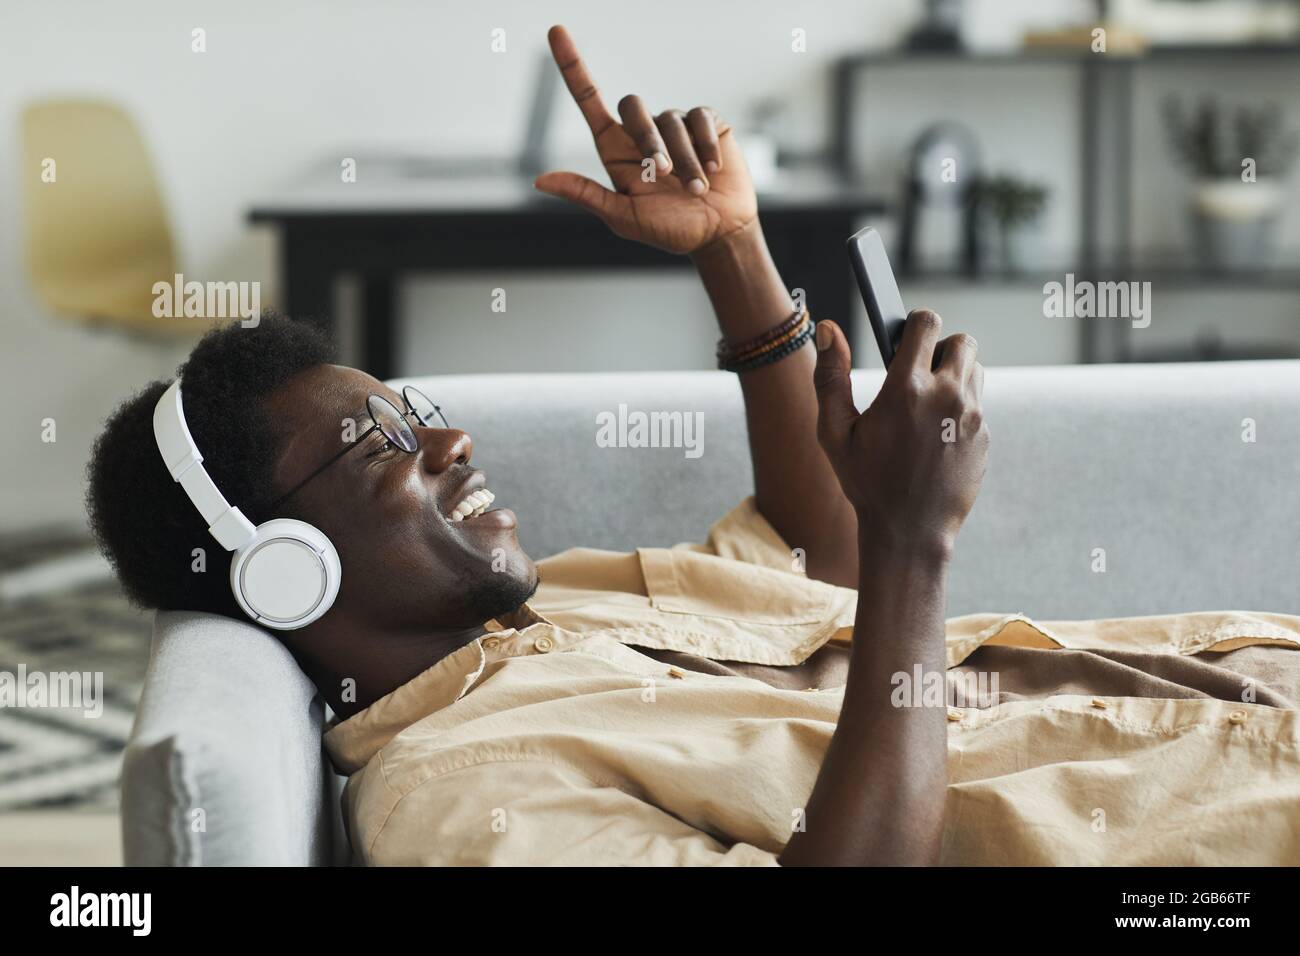 Afrikanischer Mann, der Kopfhörer und Mobiltelefon für Online-Gespräche verwendet, während er auf dem Sofa im Zimmer liegt Stockfoto